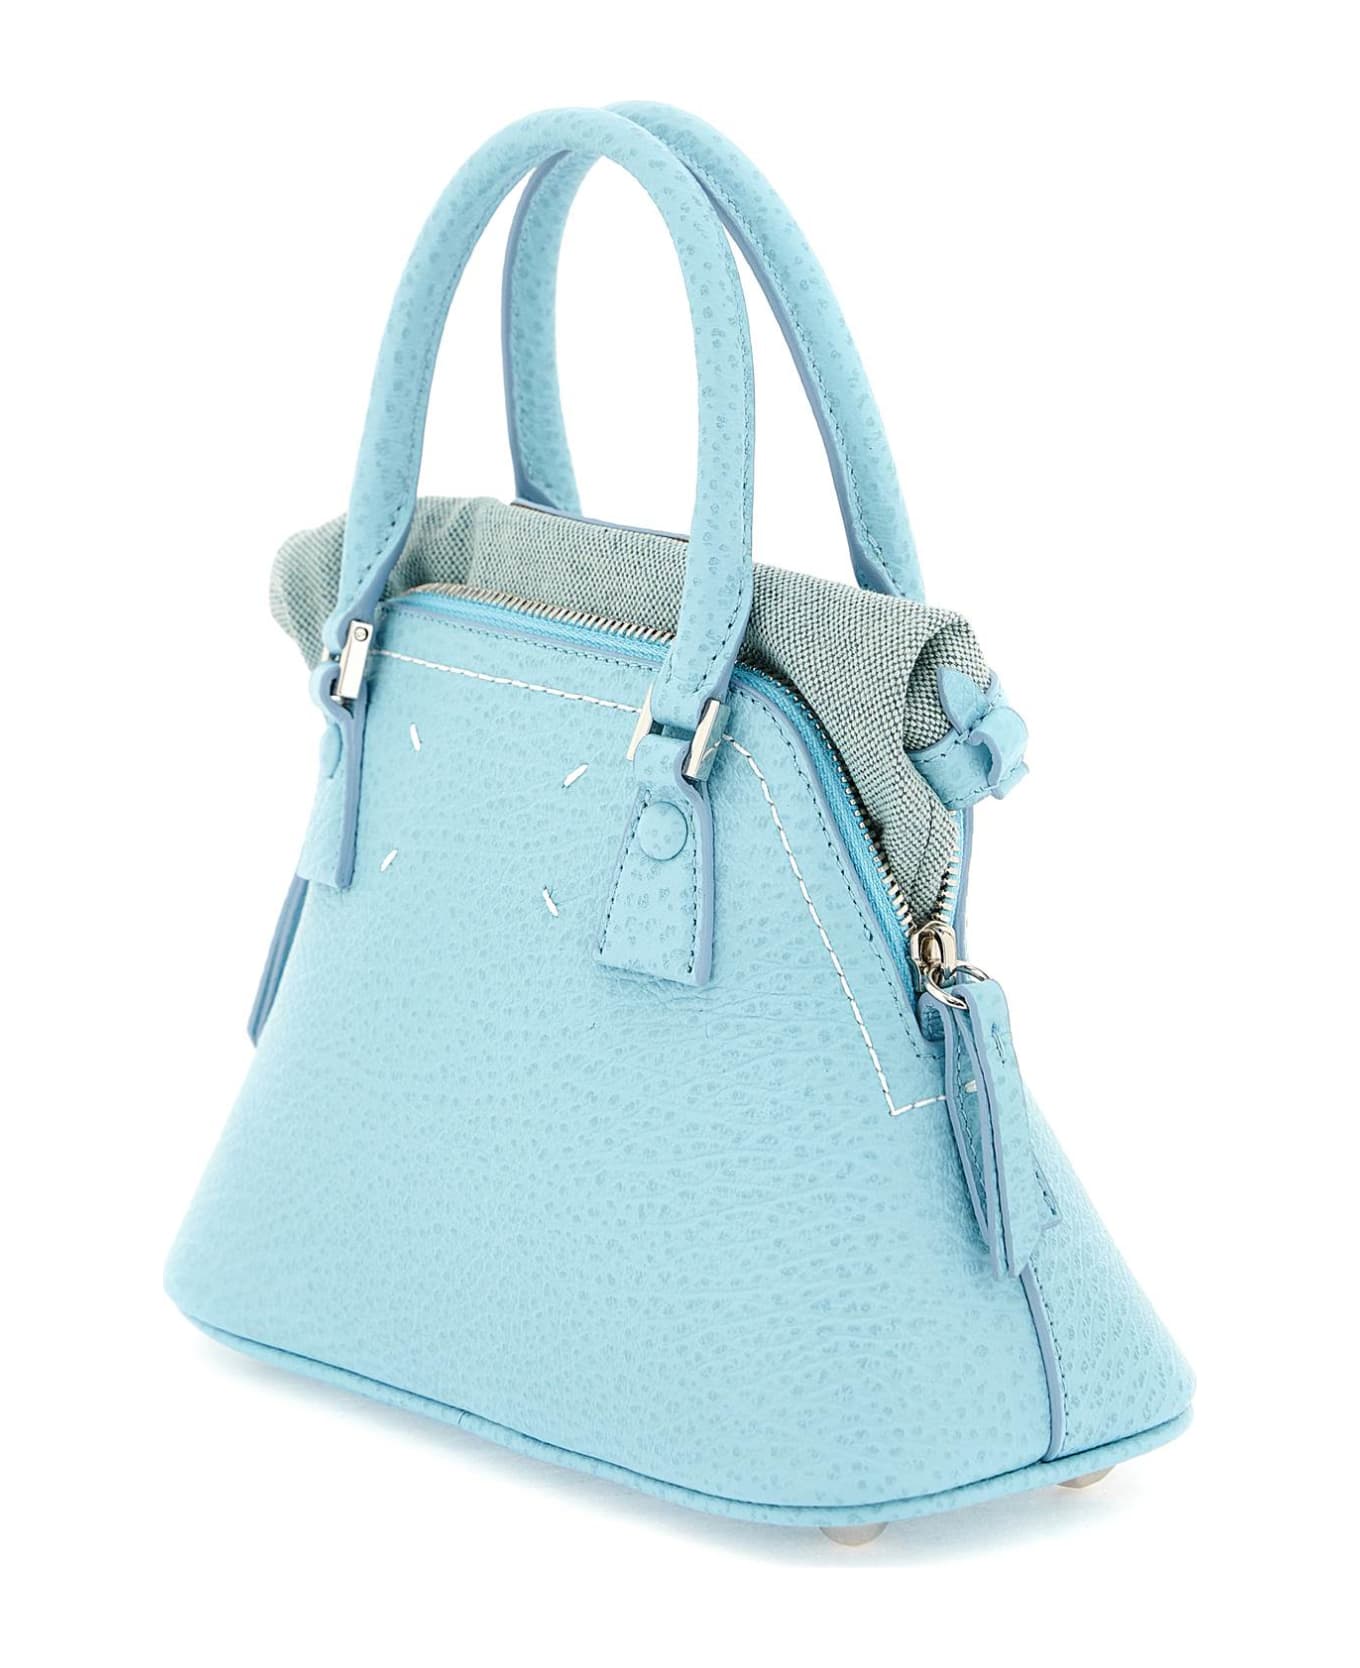 Maison Margiela 5ac Micro Handbag - AQUA (Light blue)